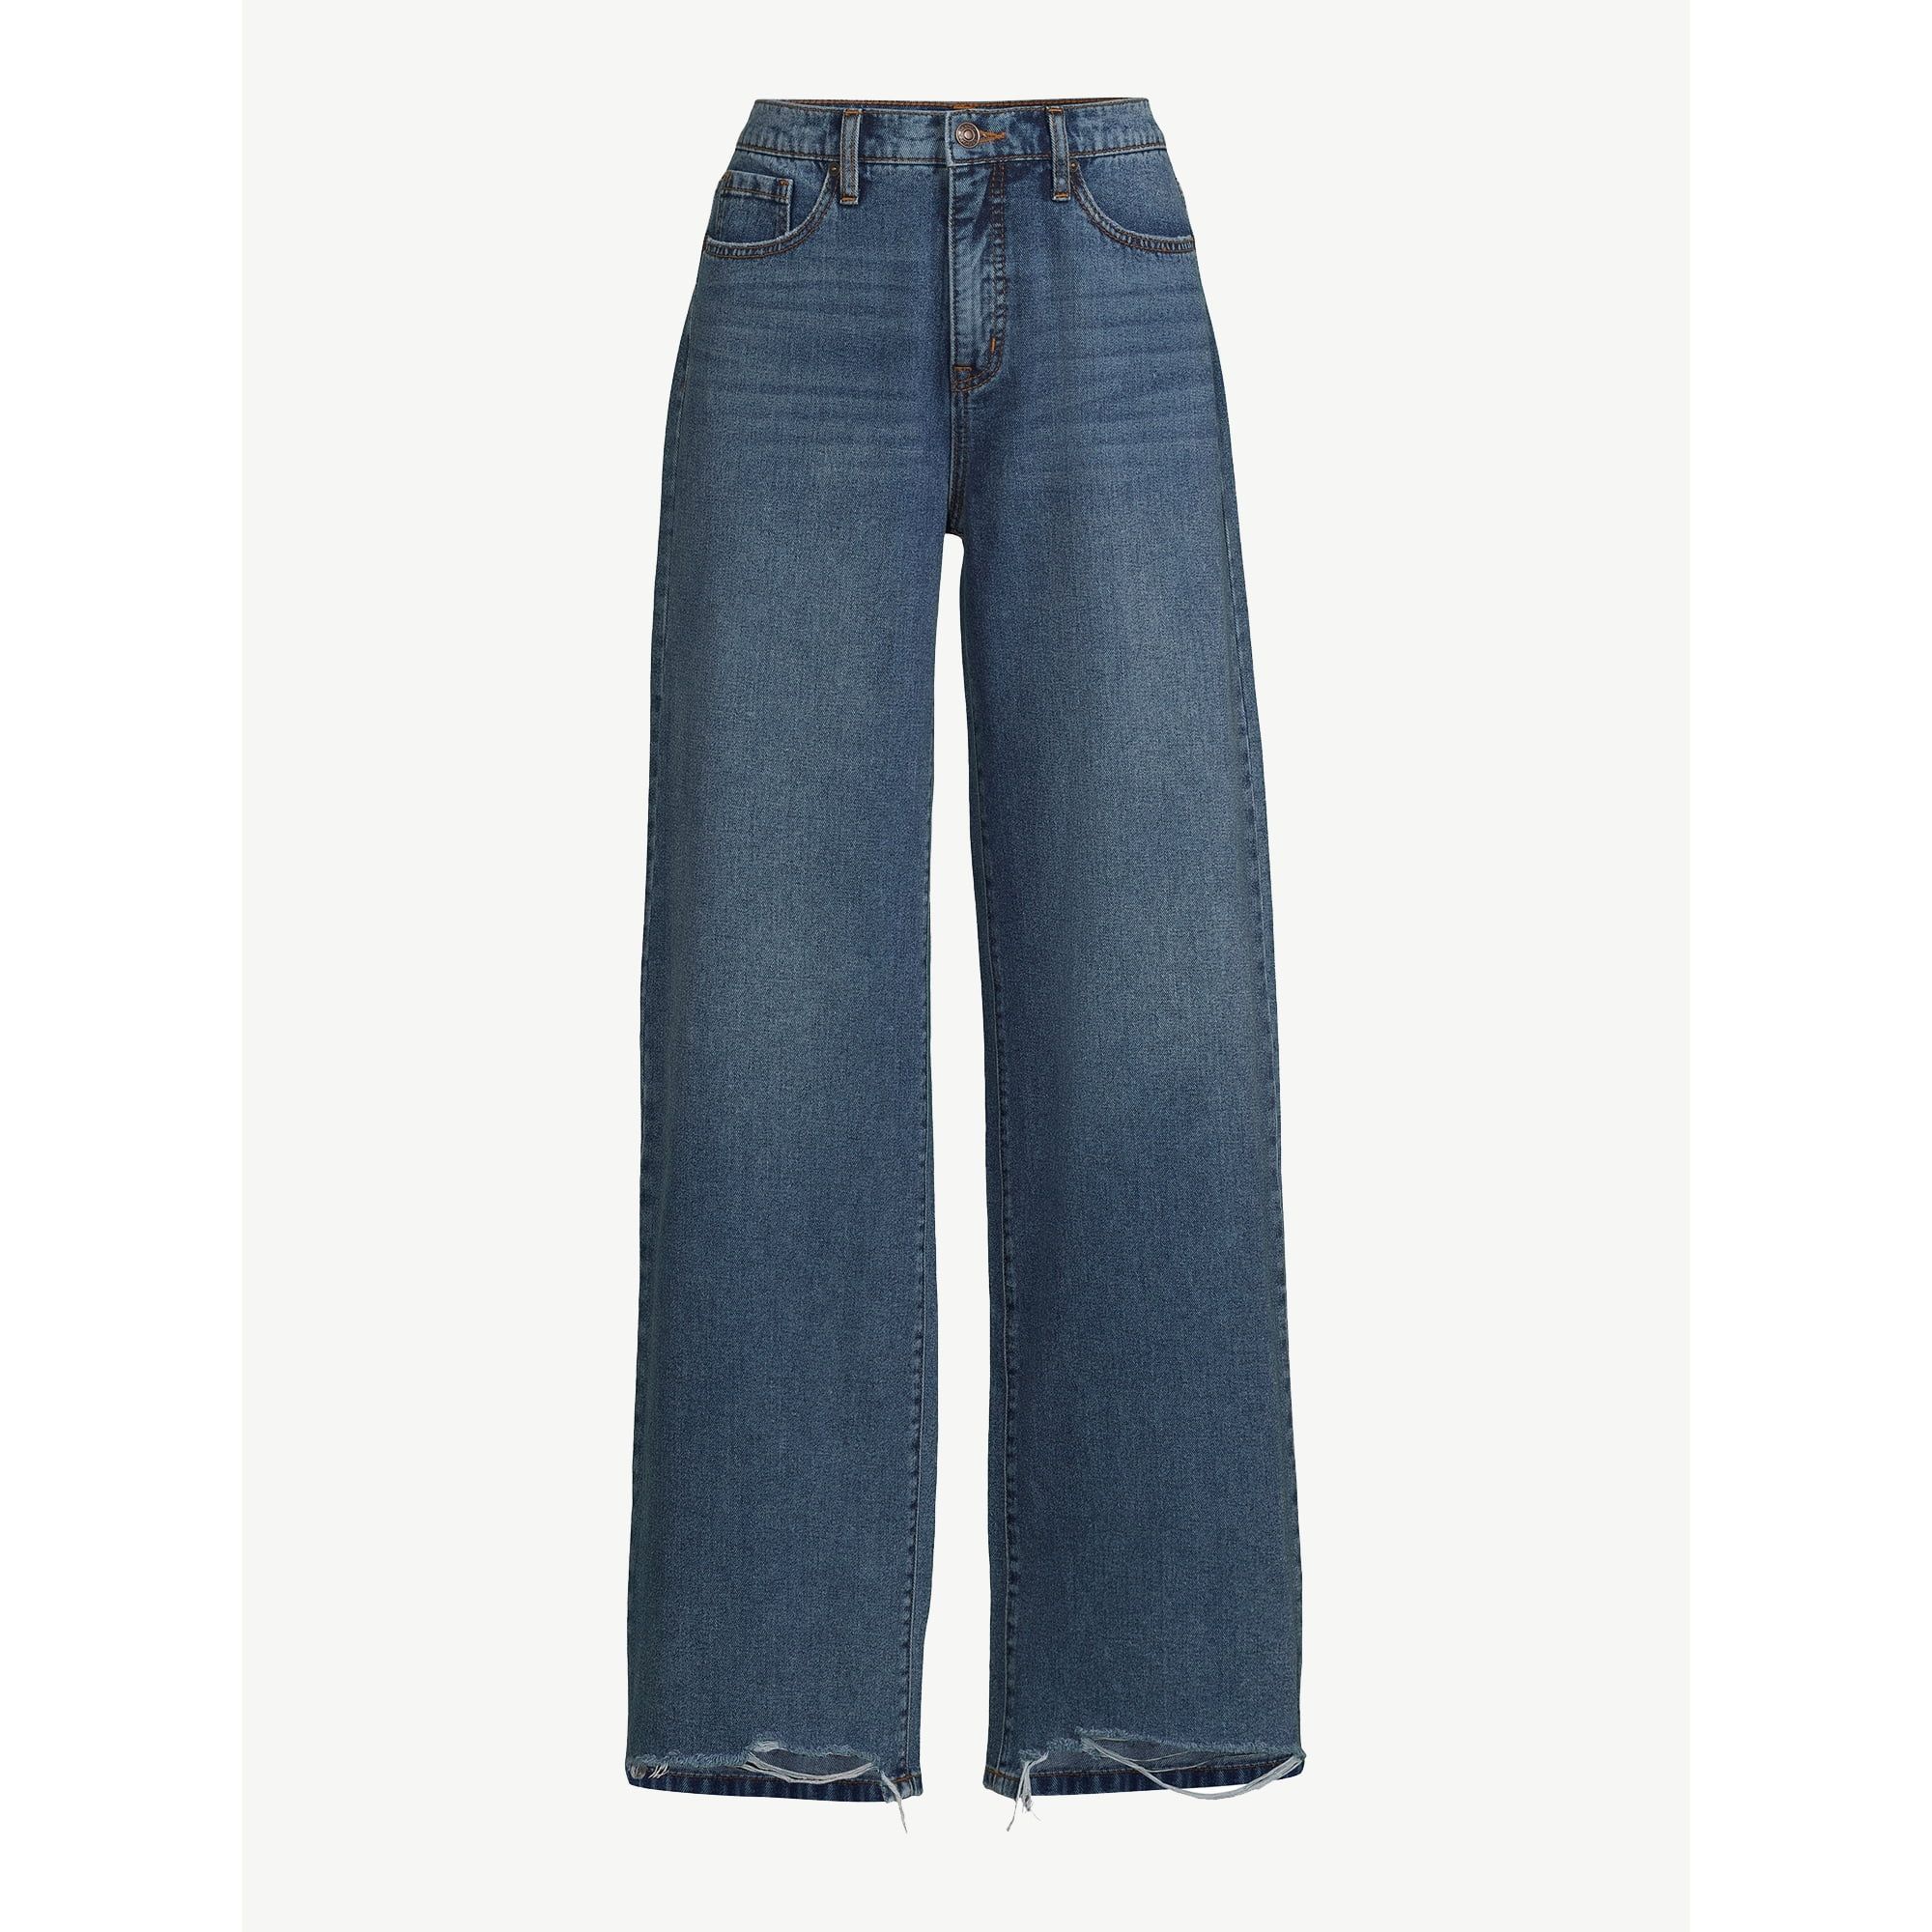 Scoop Women's Wide Leg Low Rise Jeans, Sizes 0-18 - Walmart.com | Walmart (US)